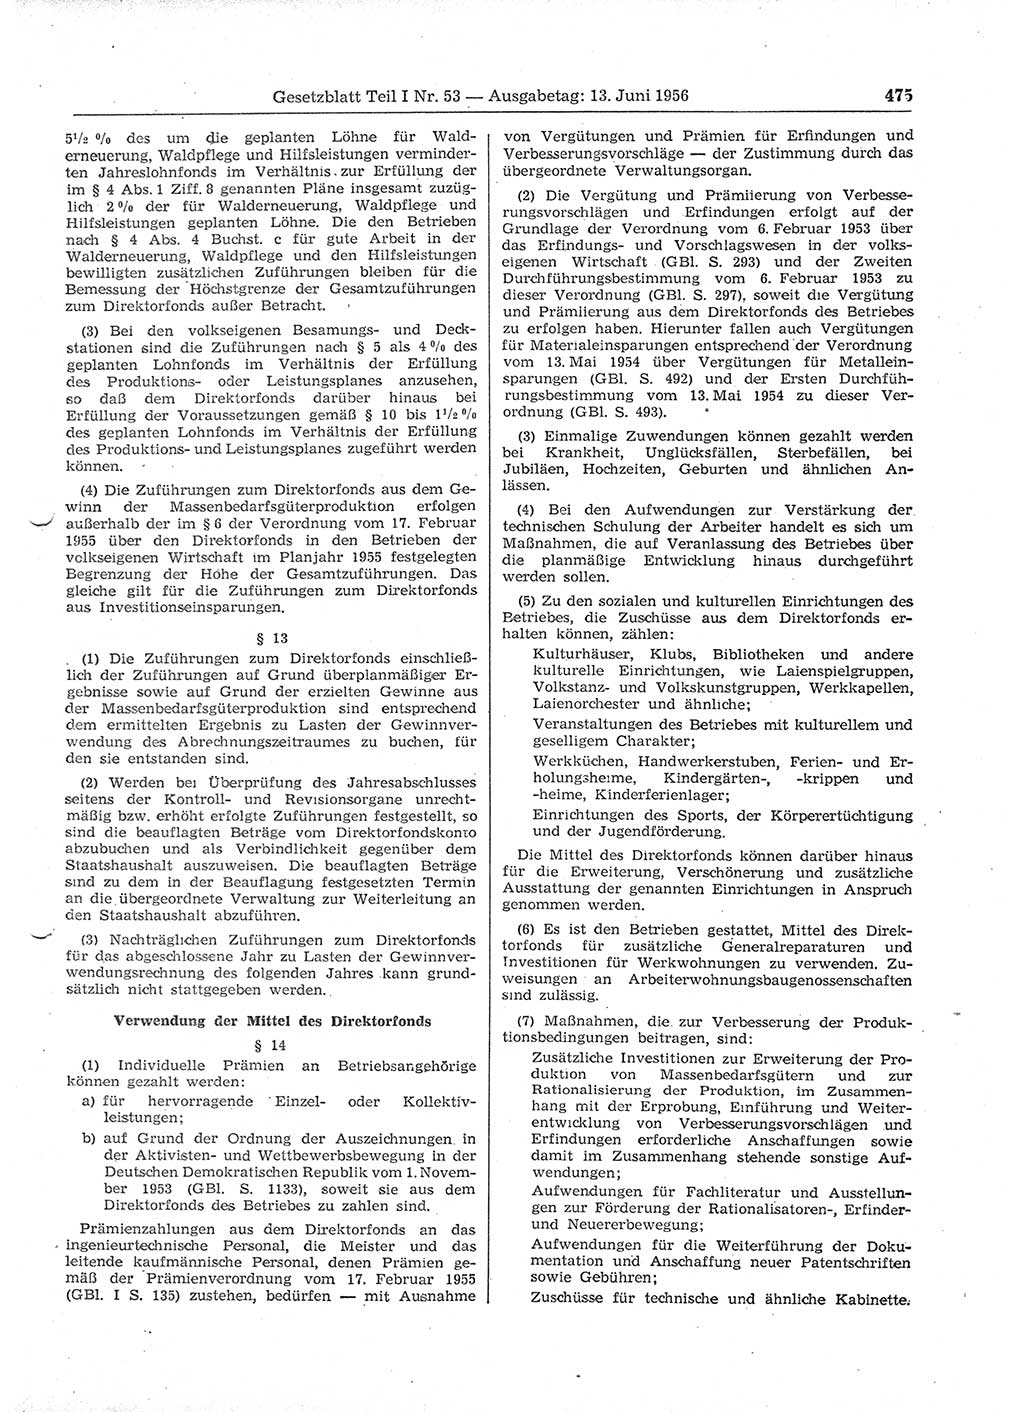 Gesetzblatt (GBl.) der Deutschen Demokratischen Republik (DDR) Teil Ⅰ 1956, Seite 475 (GBl. DDR Ⅰ 1956, S. 475)